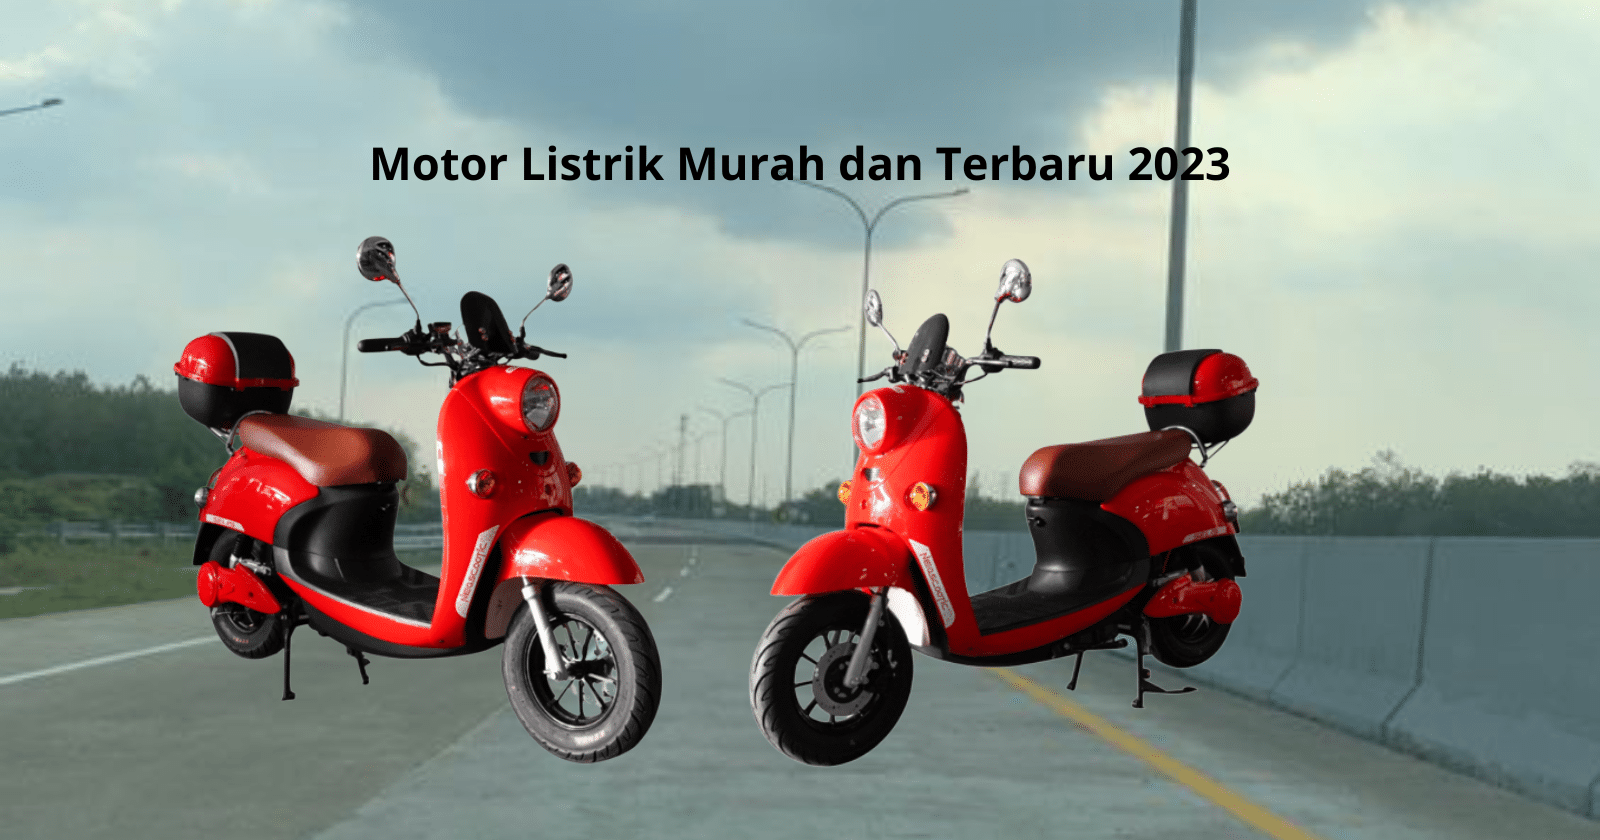 Motor Listrik Murah dan Terbaru 2023